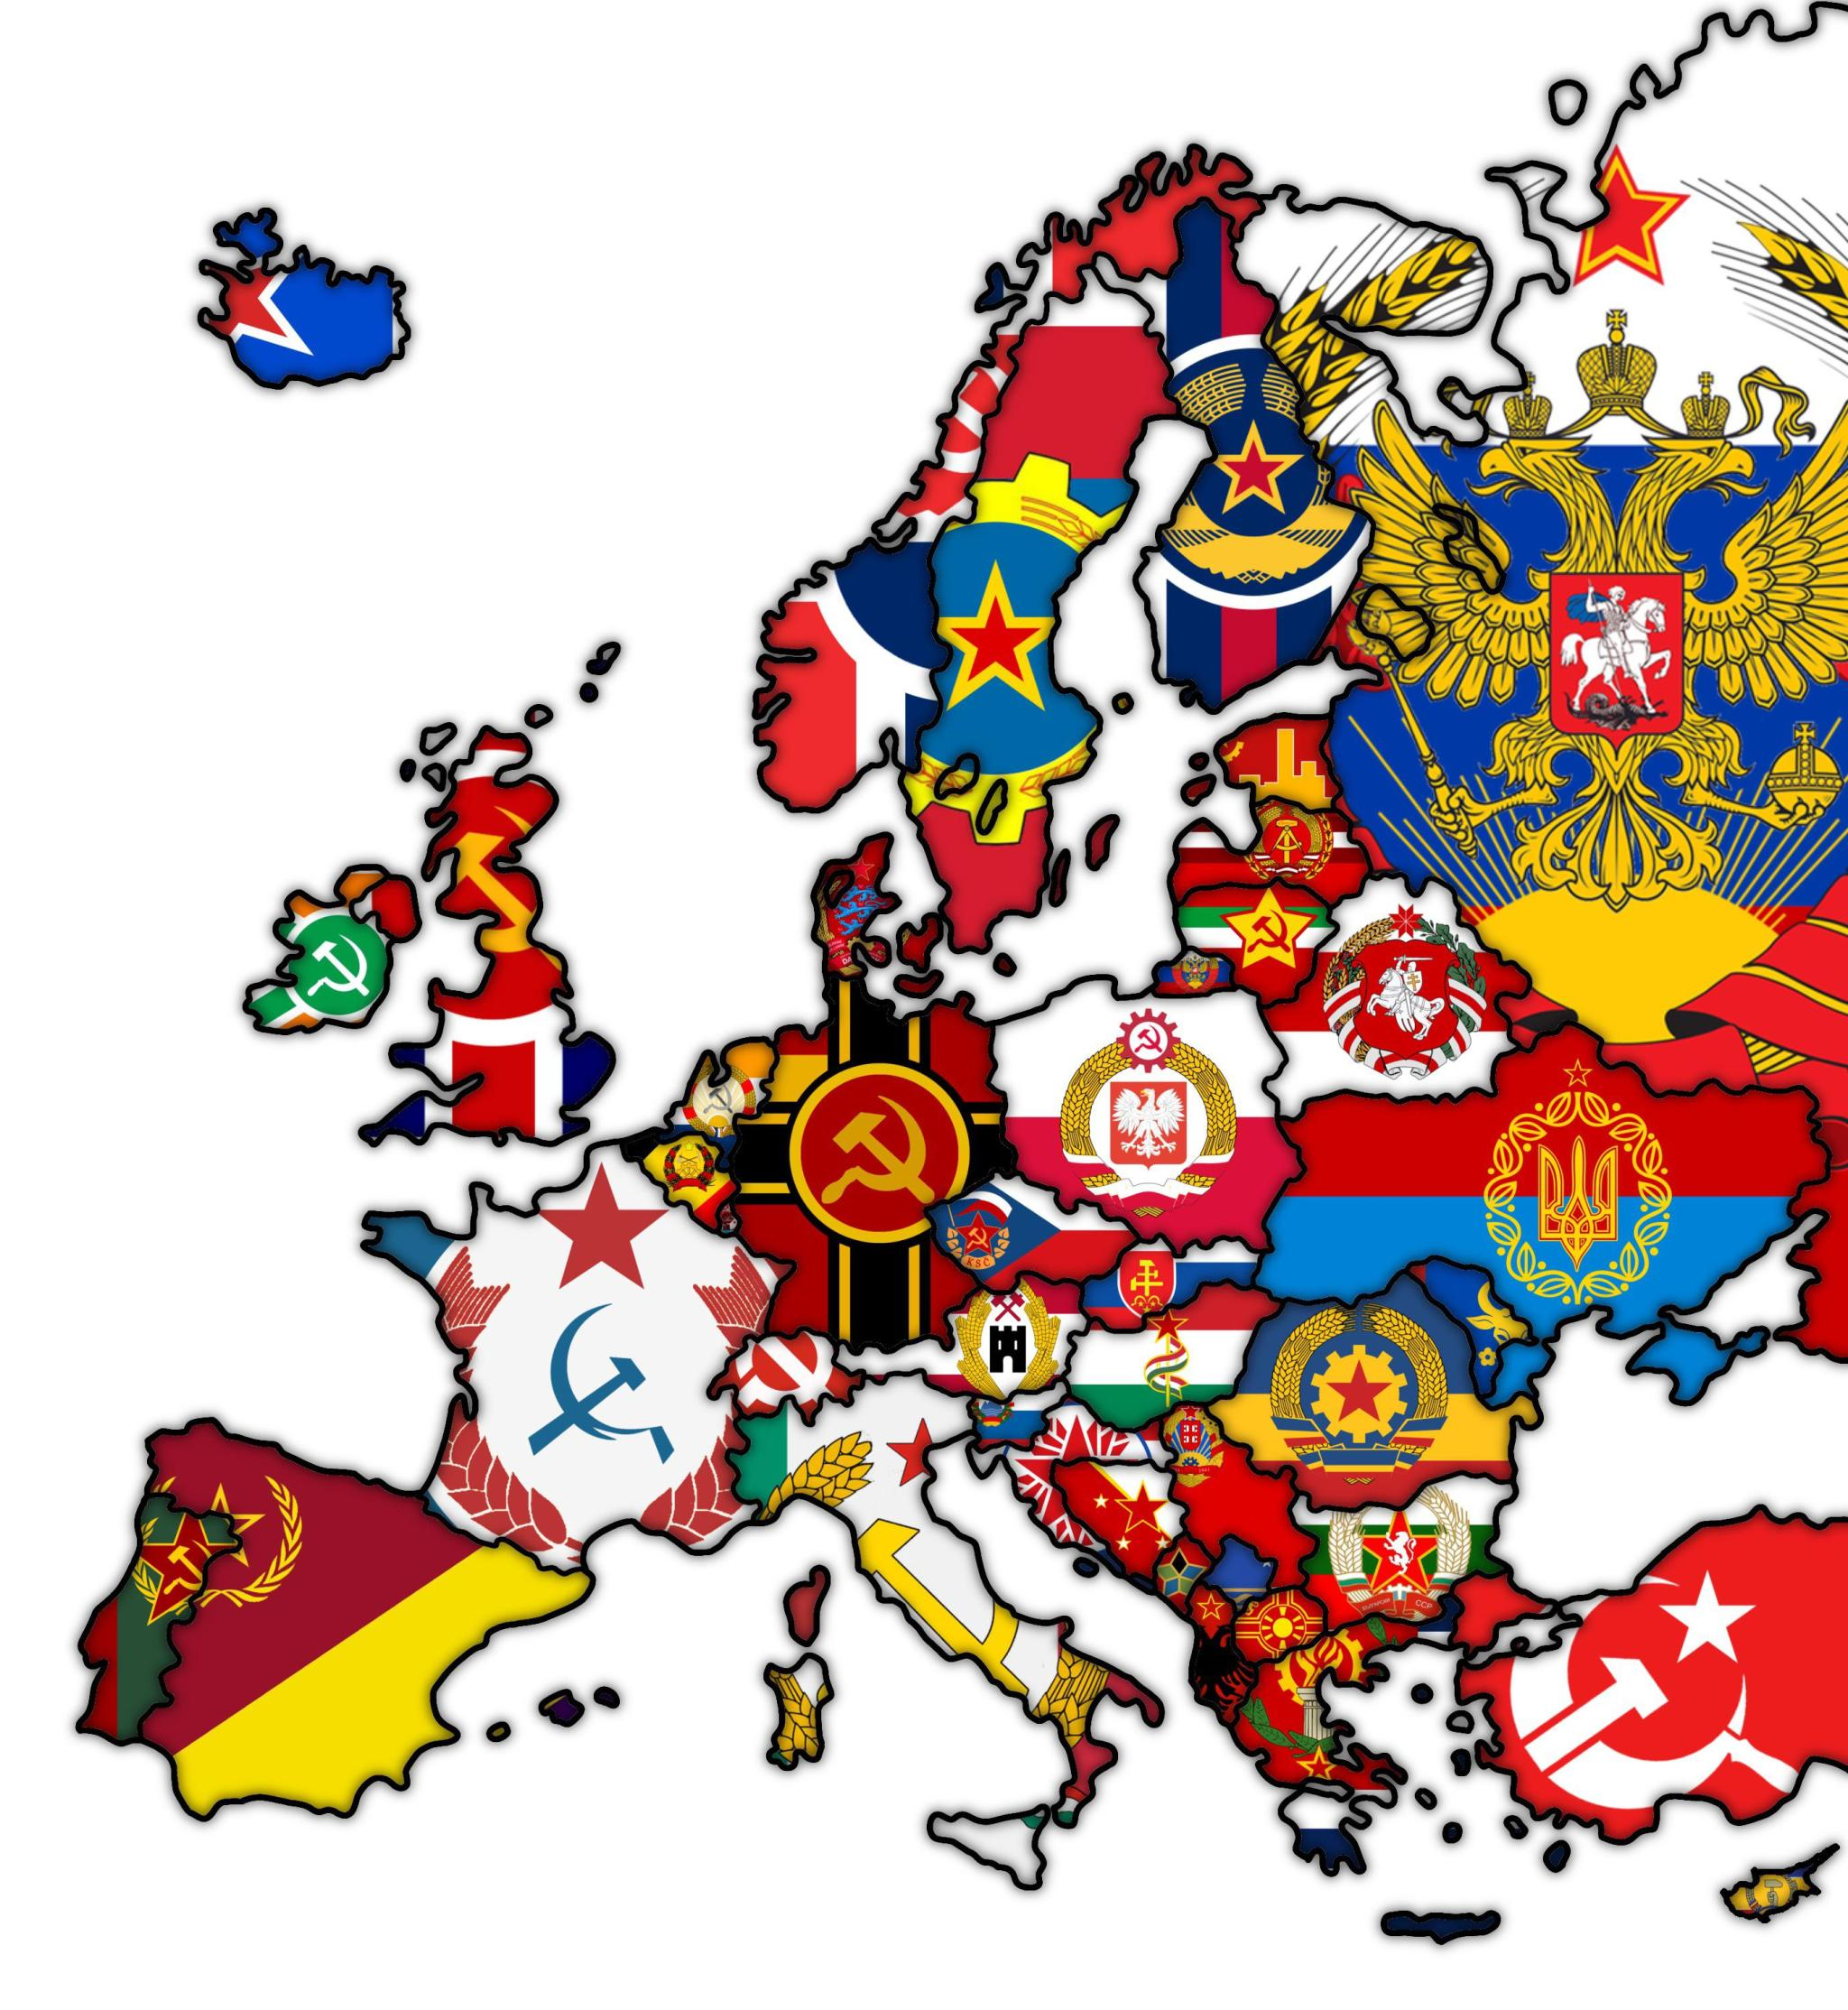 Read more about the article Russland würde es gut finden. Europakarte zeigt ein rein kommunistisches Europa